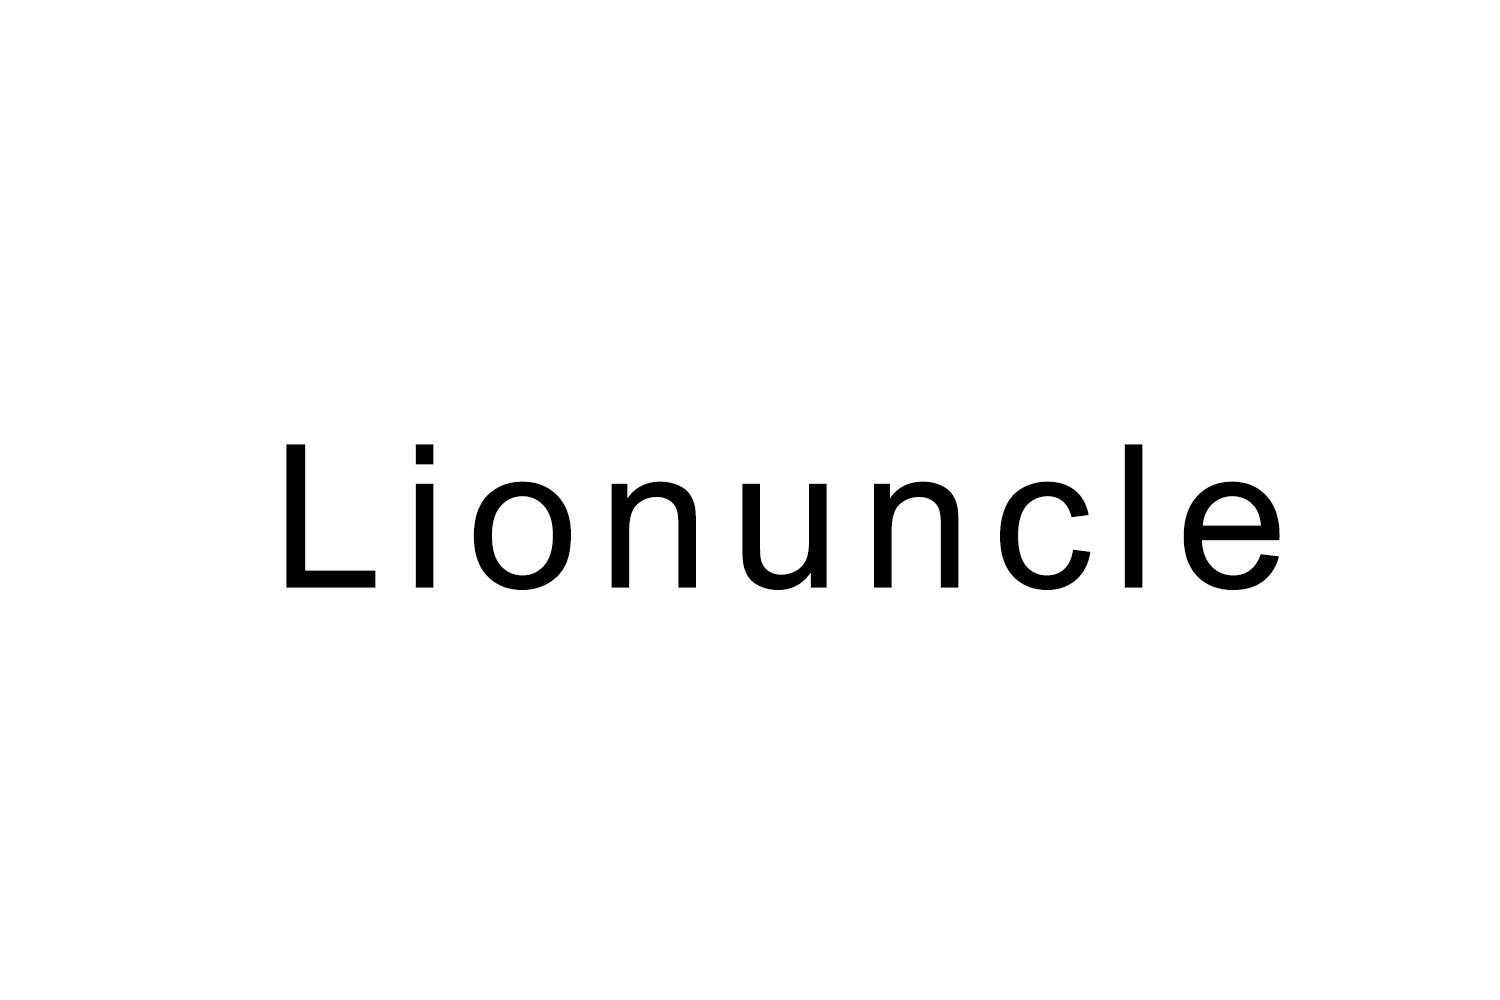 LIONUNCLE